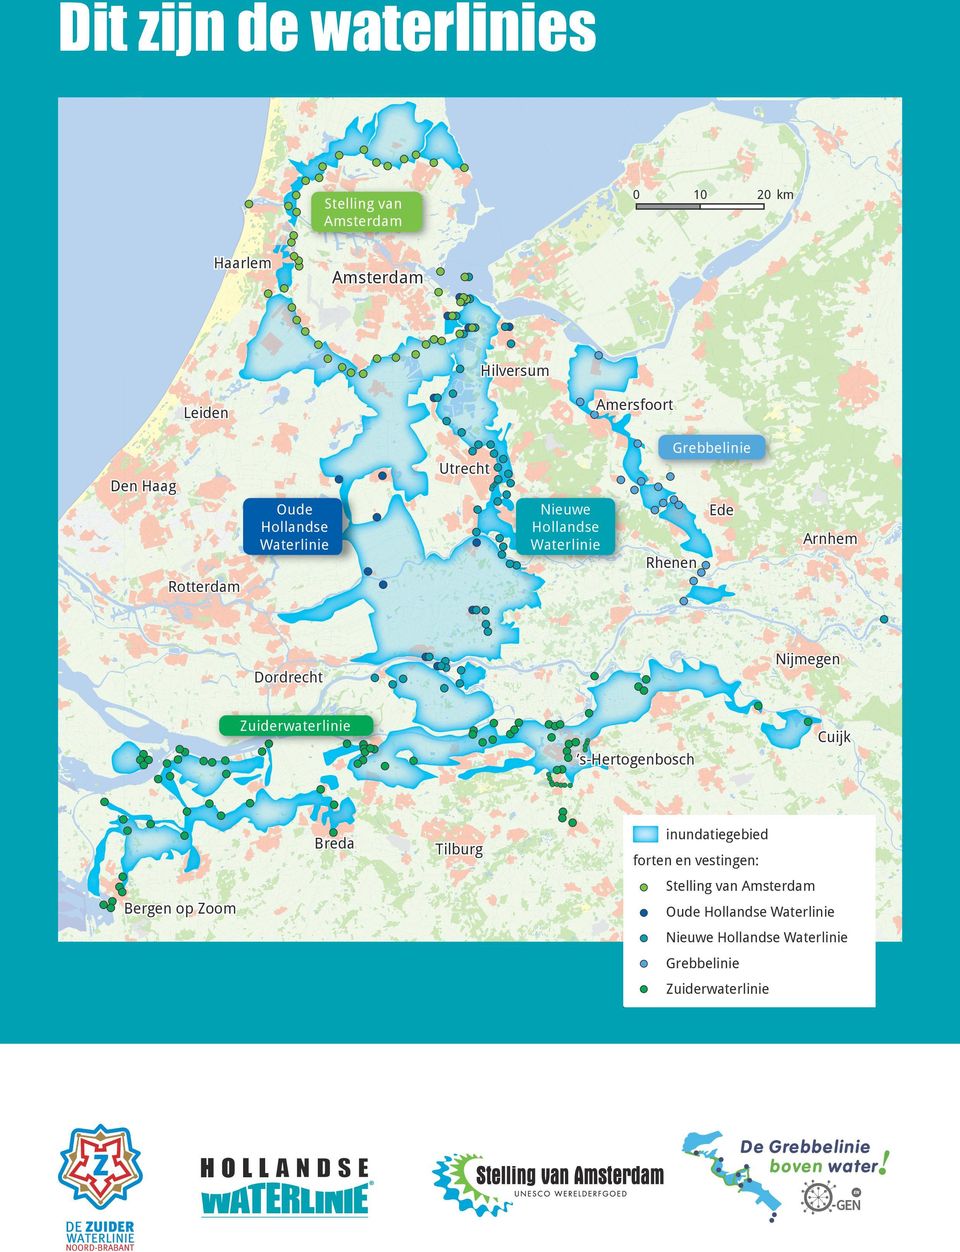 Nijmegen Dordrecht Zuiderwaterlinie Cuijk s-hertogenbosch Breda Tilburg inundatiegebied forten en vestingen: